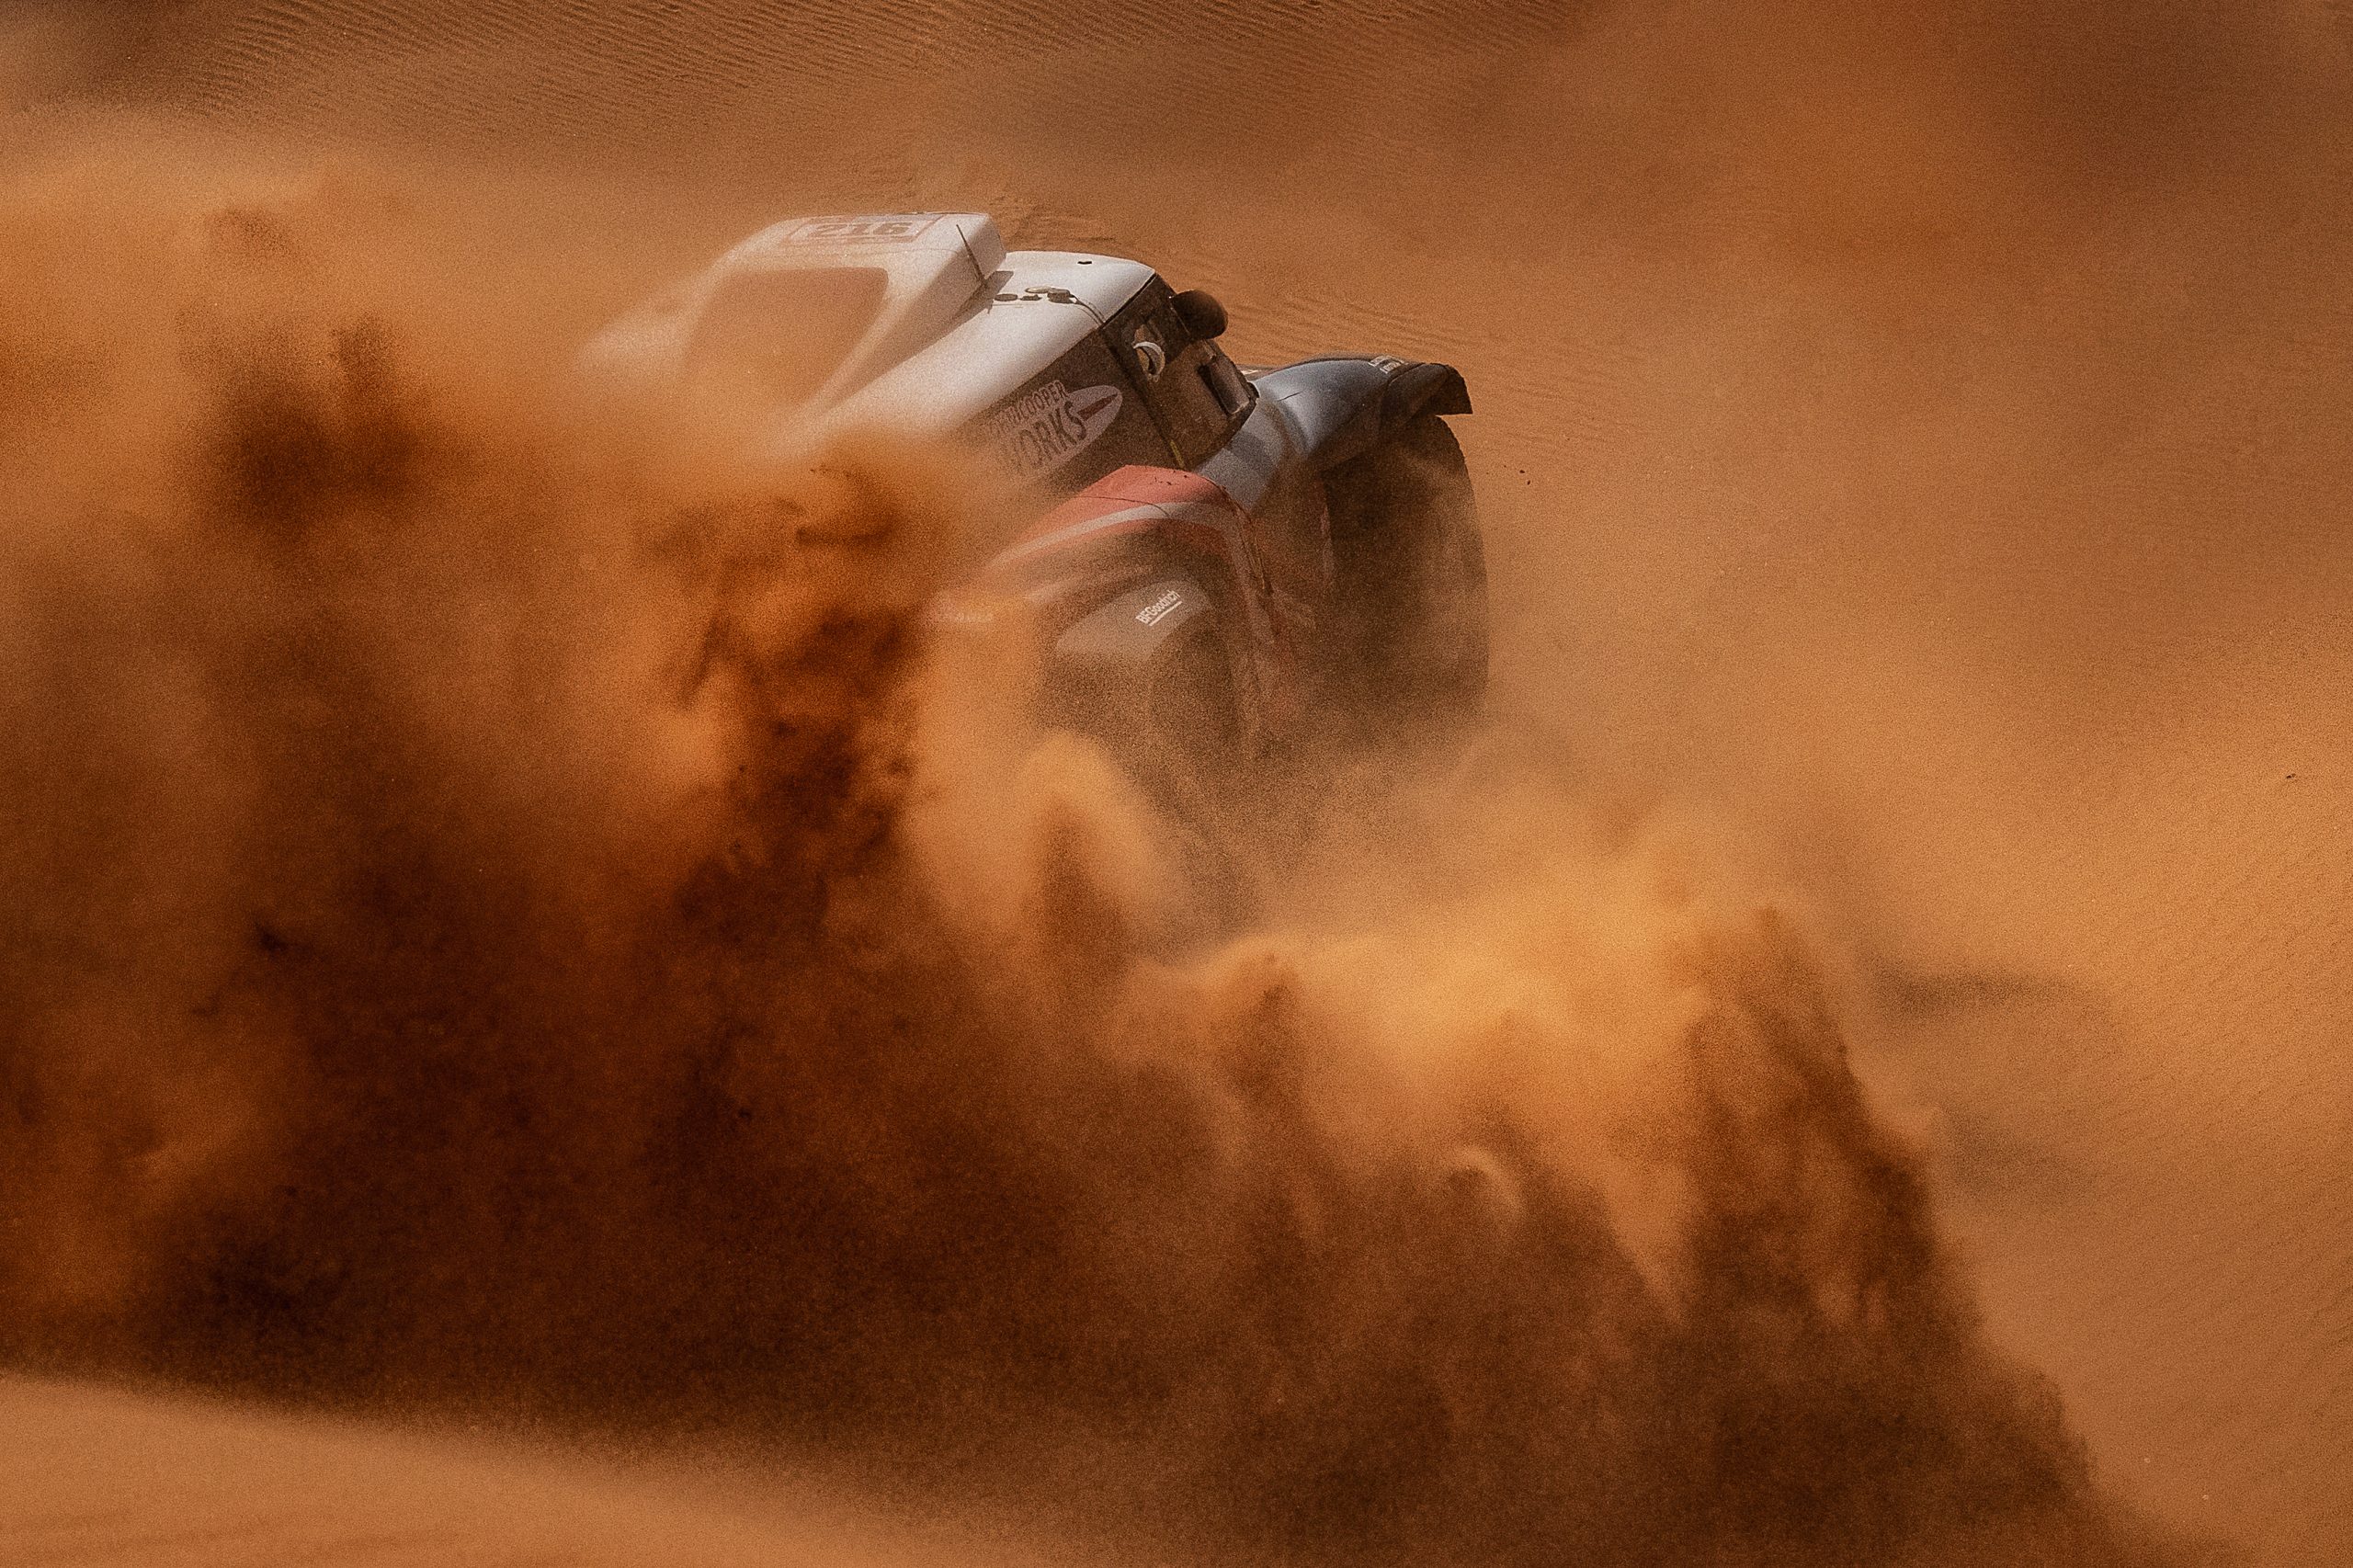 Dakar Rally 2022 in Saudi Arabian desert